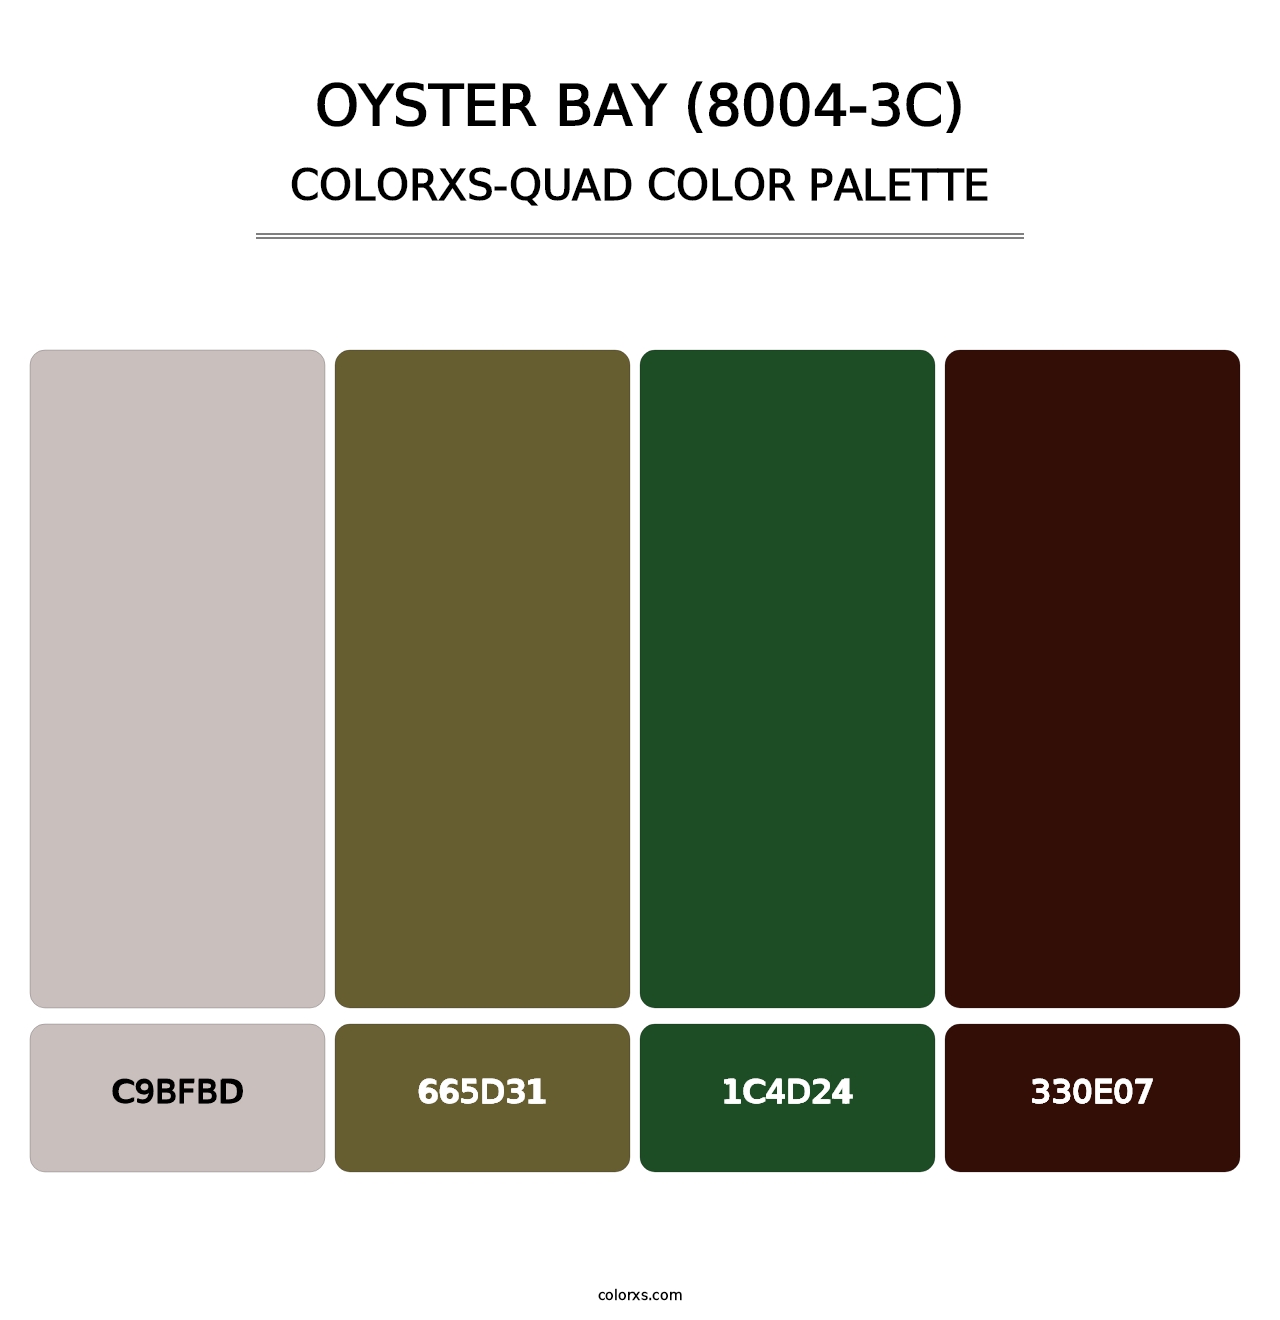 Oyster Bay (8004-3C) - Colorxs Quad Palette